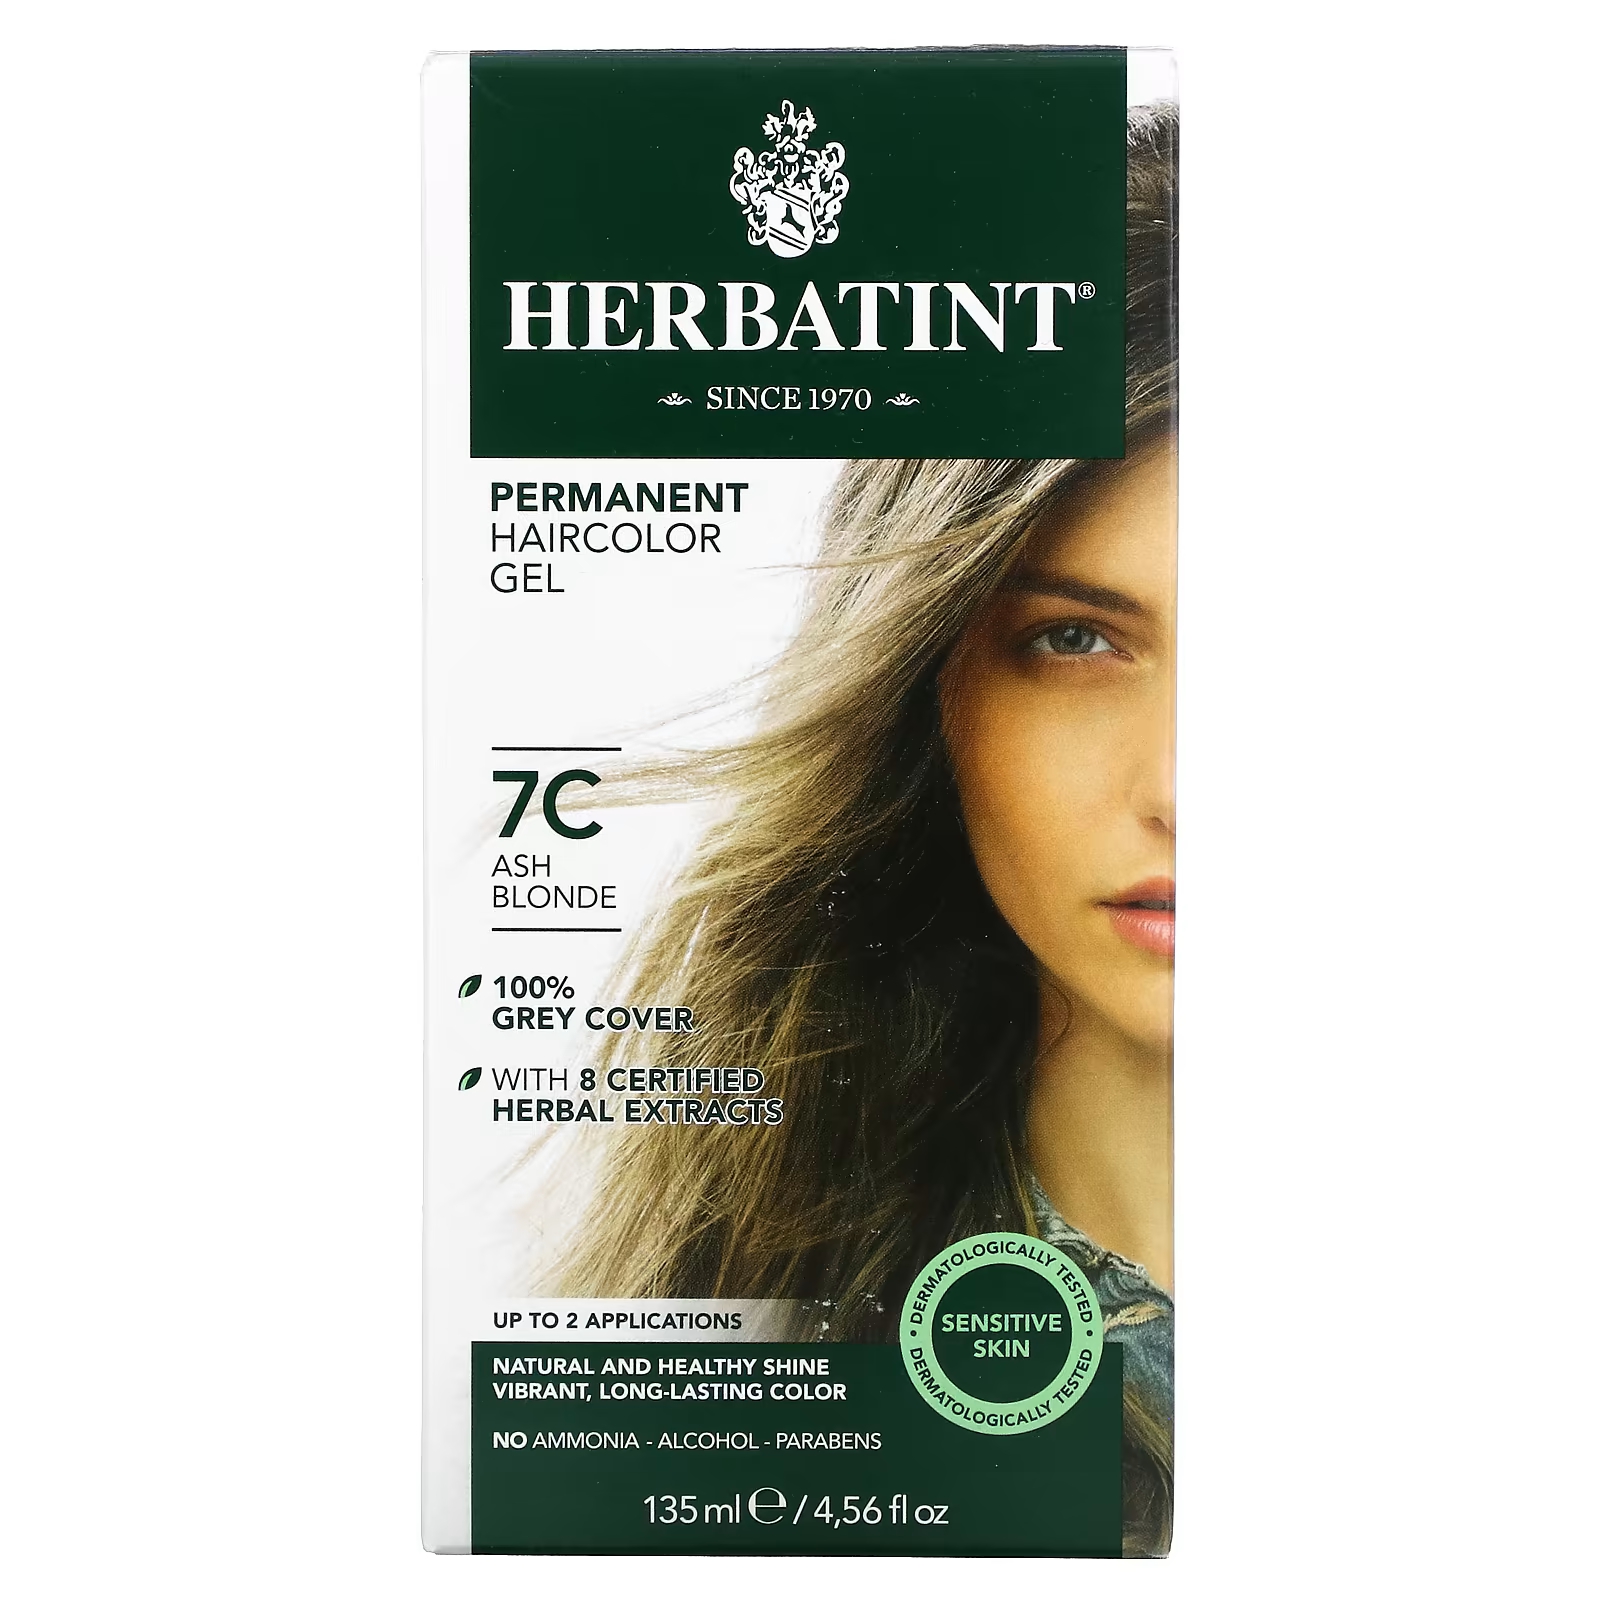 Перманентная гель-краска для волос Herbatint 7C пепельный блондин, 135 мл herbatint перманентная гель краска для волос 6d темный золотой блондин 135 мл